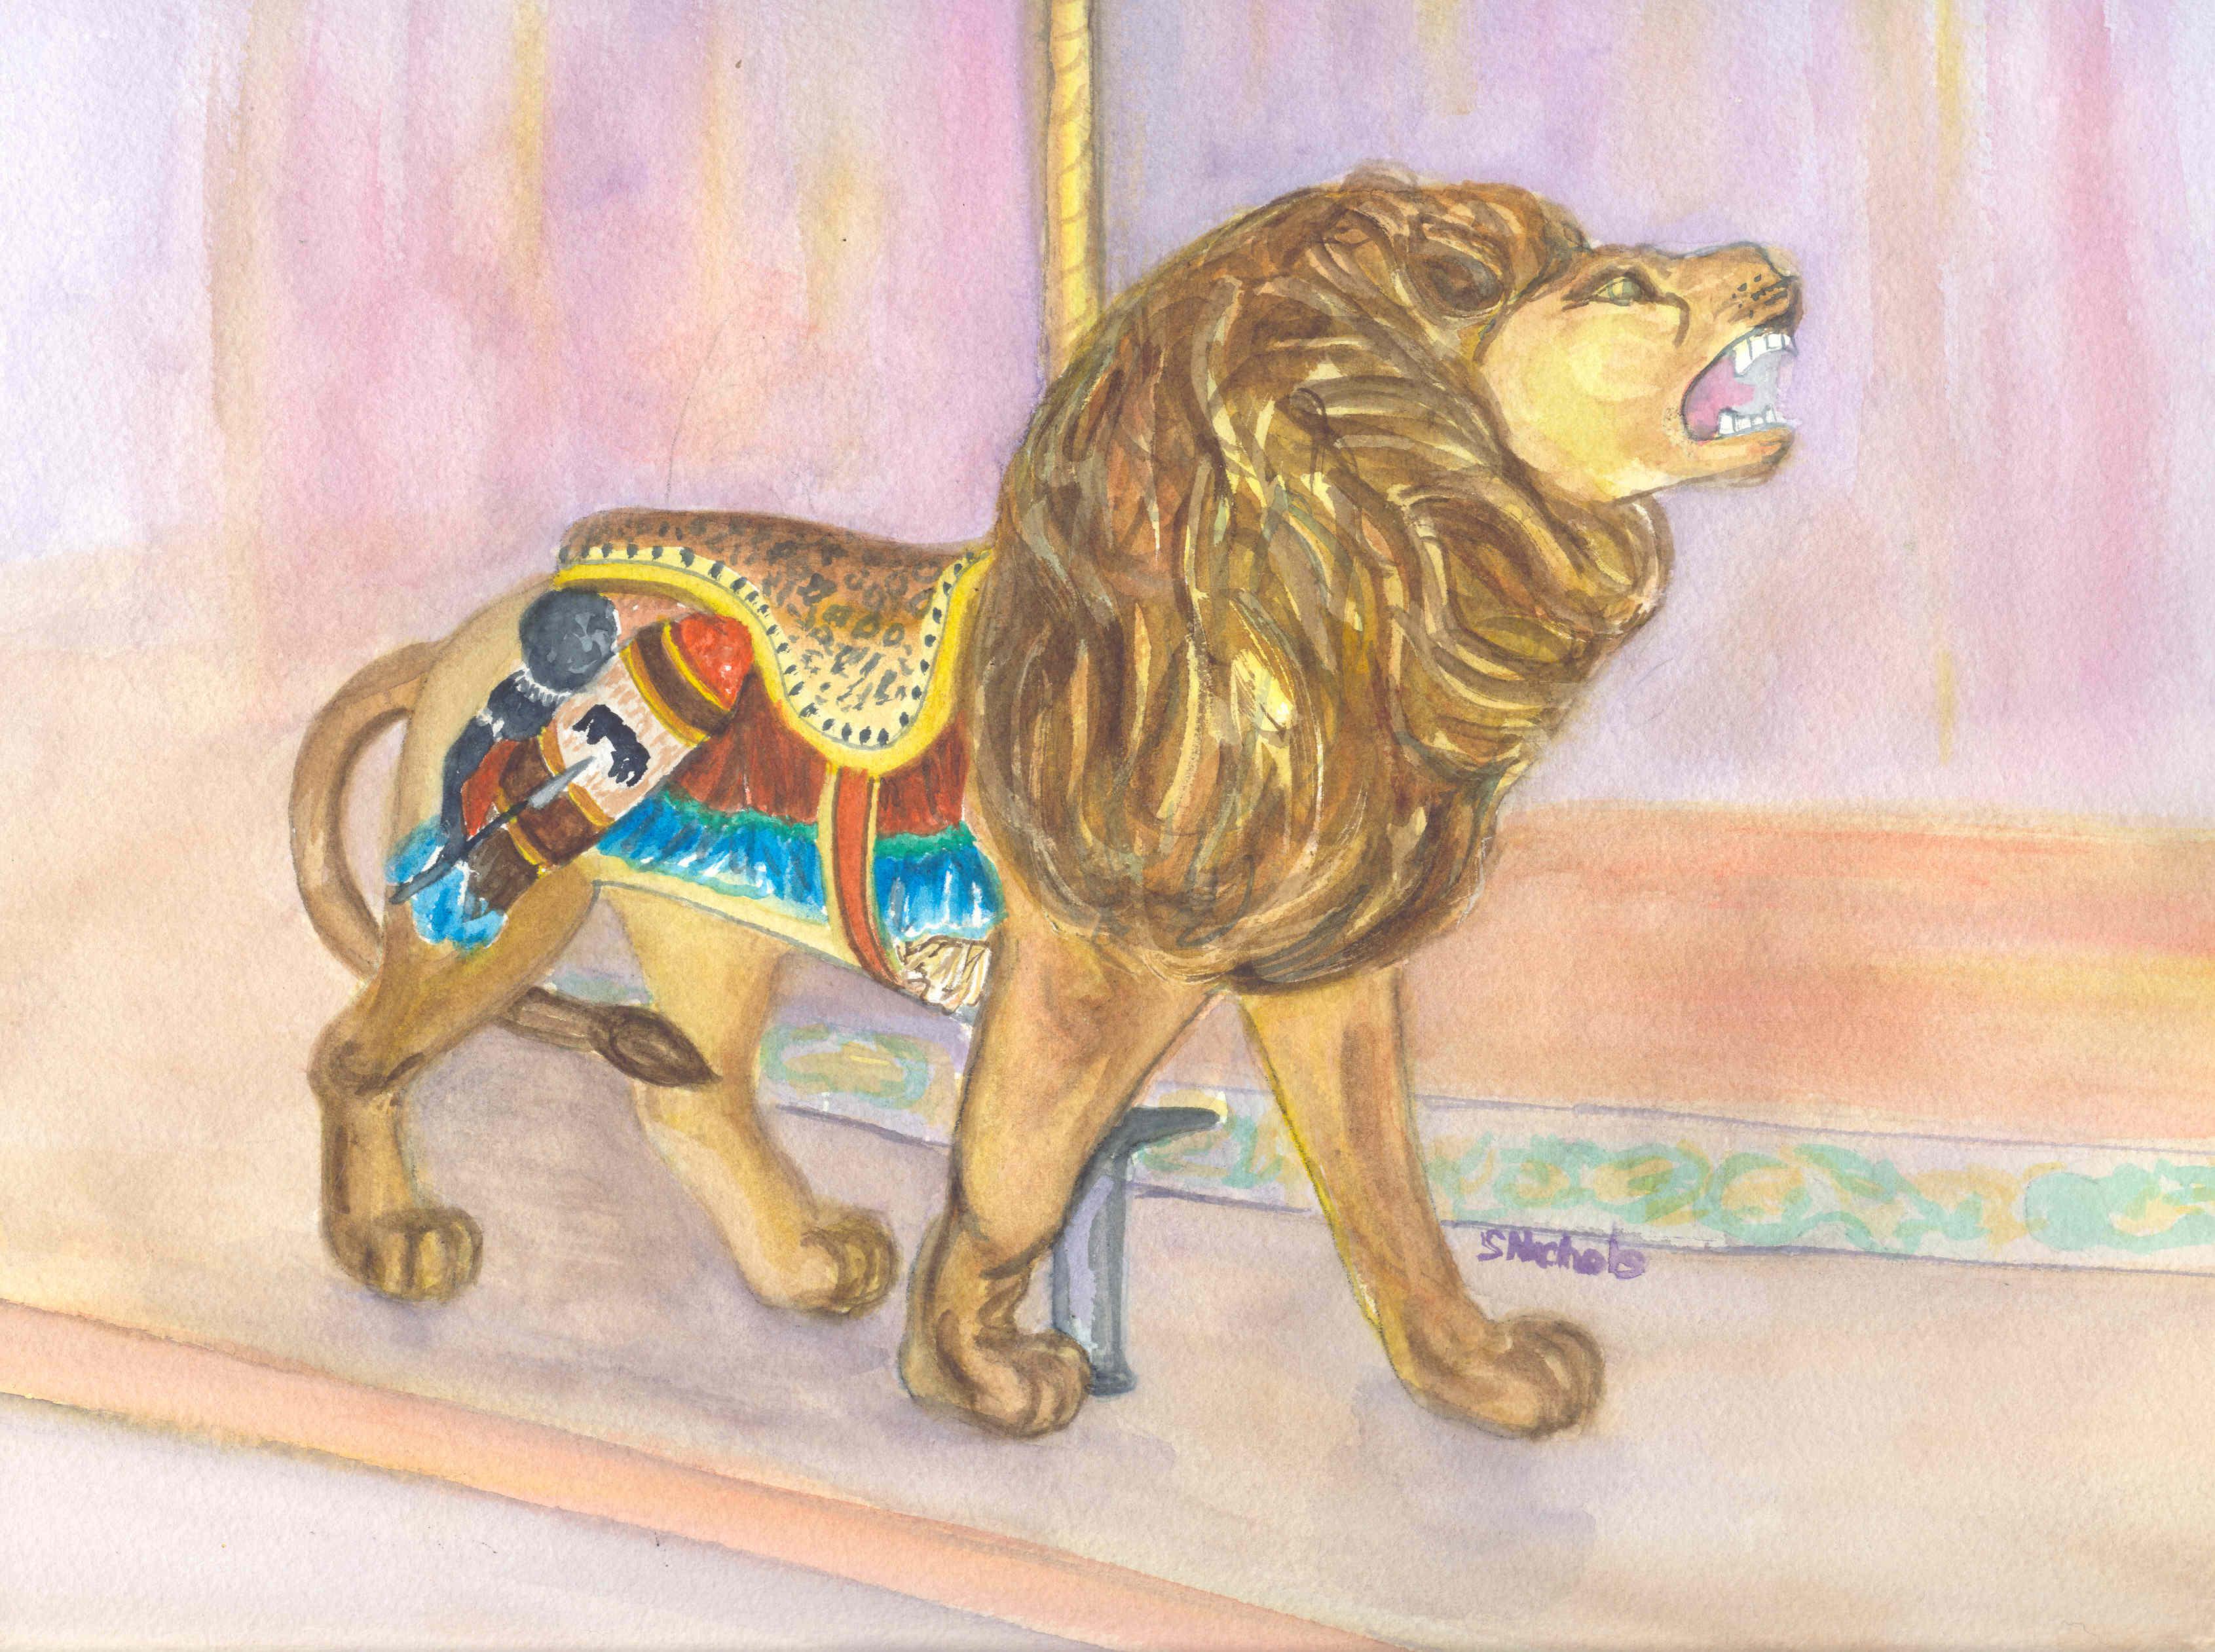 Trimper's Lion